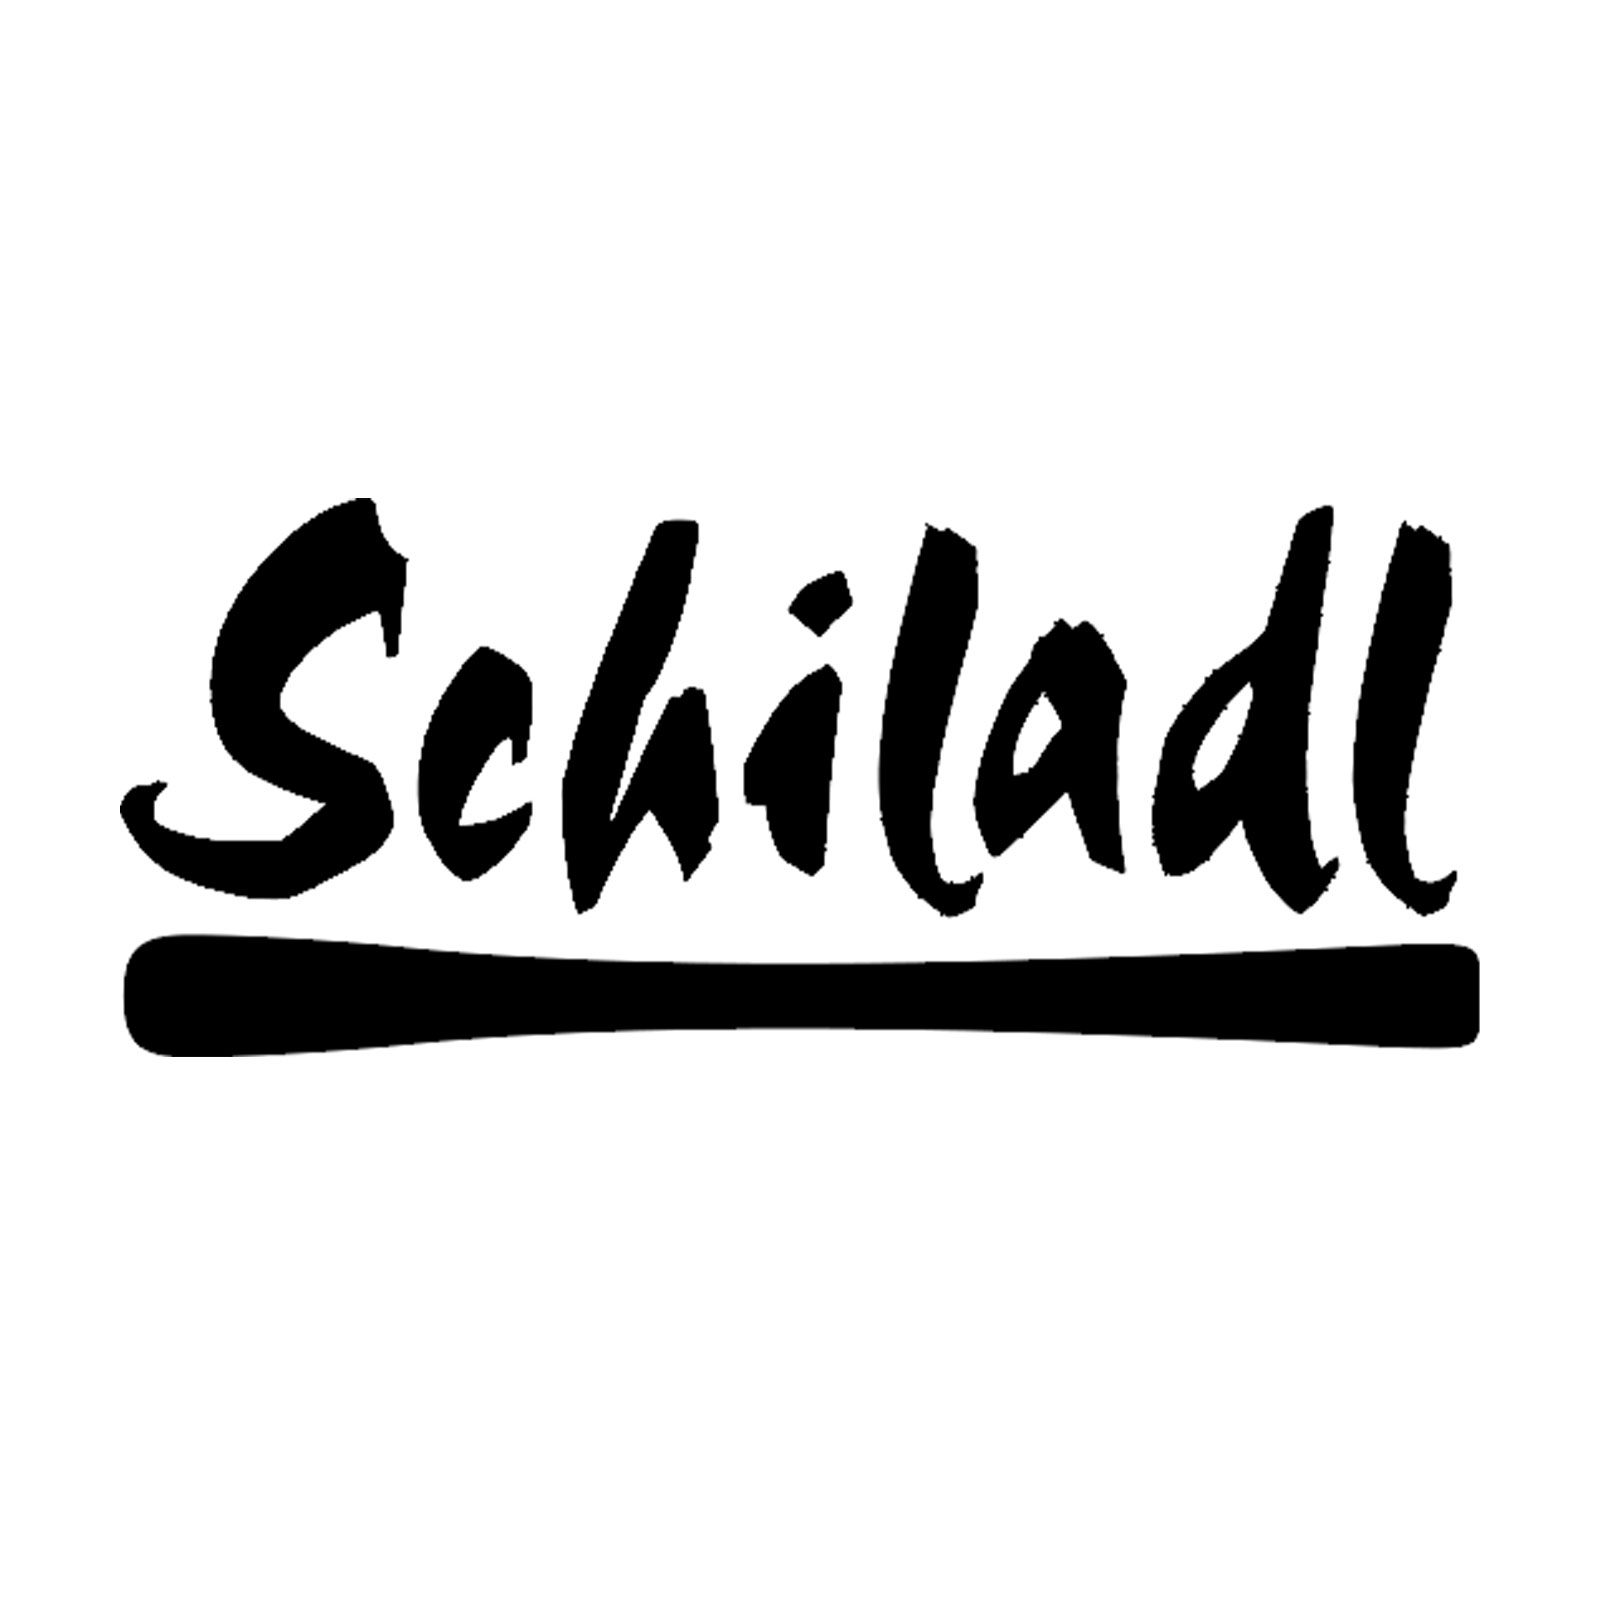 Schiladl